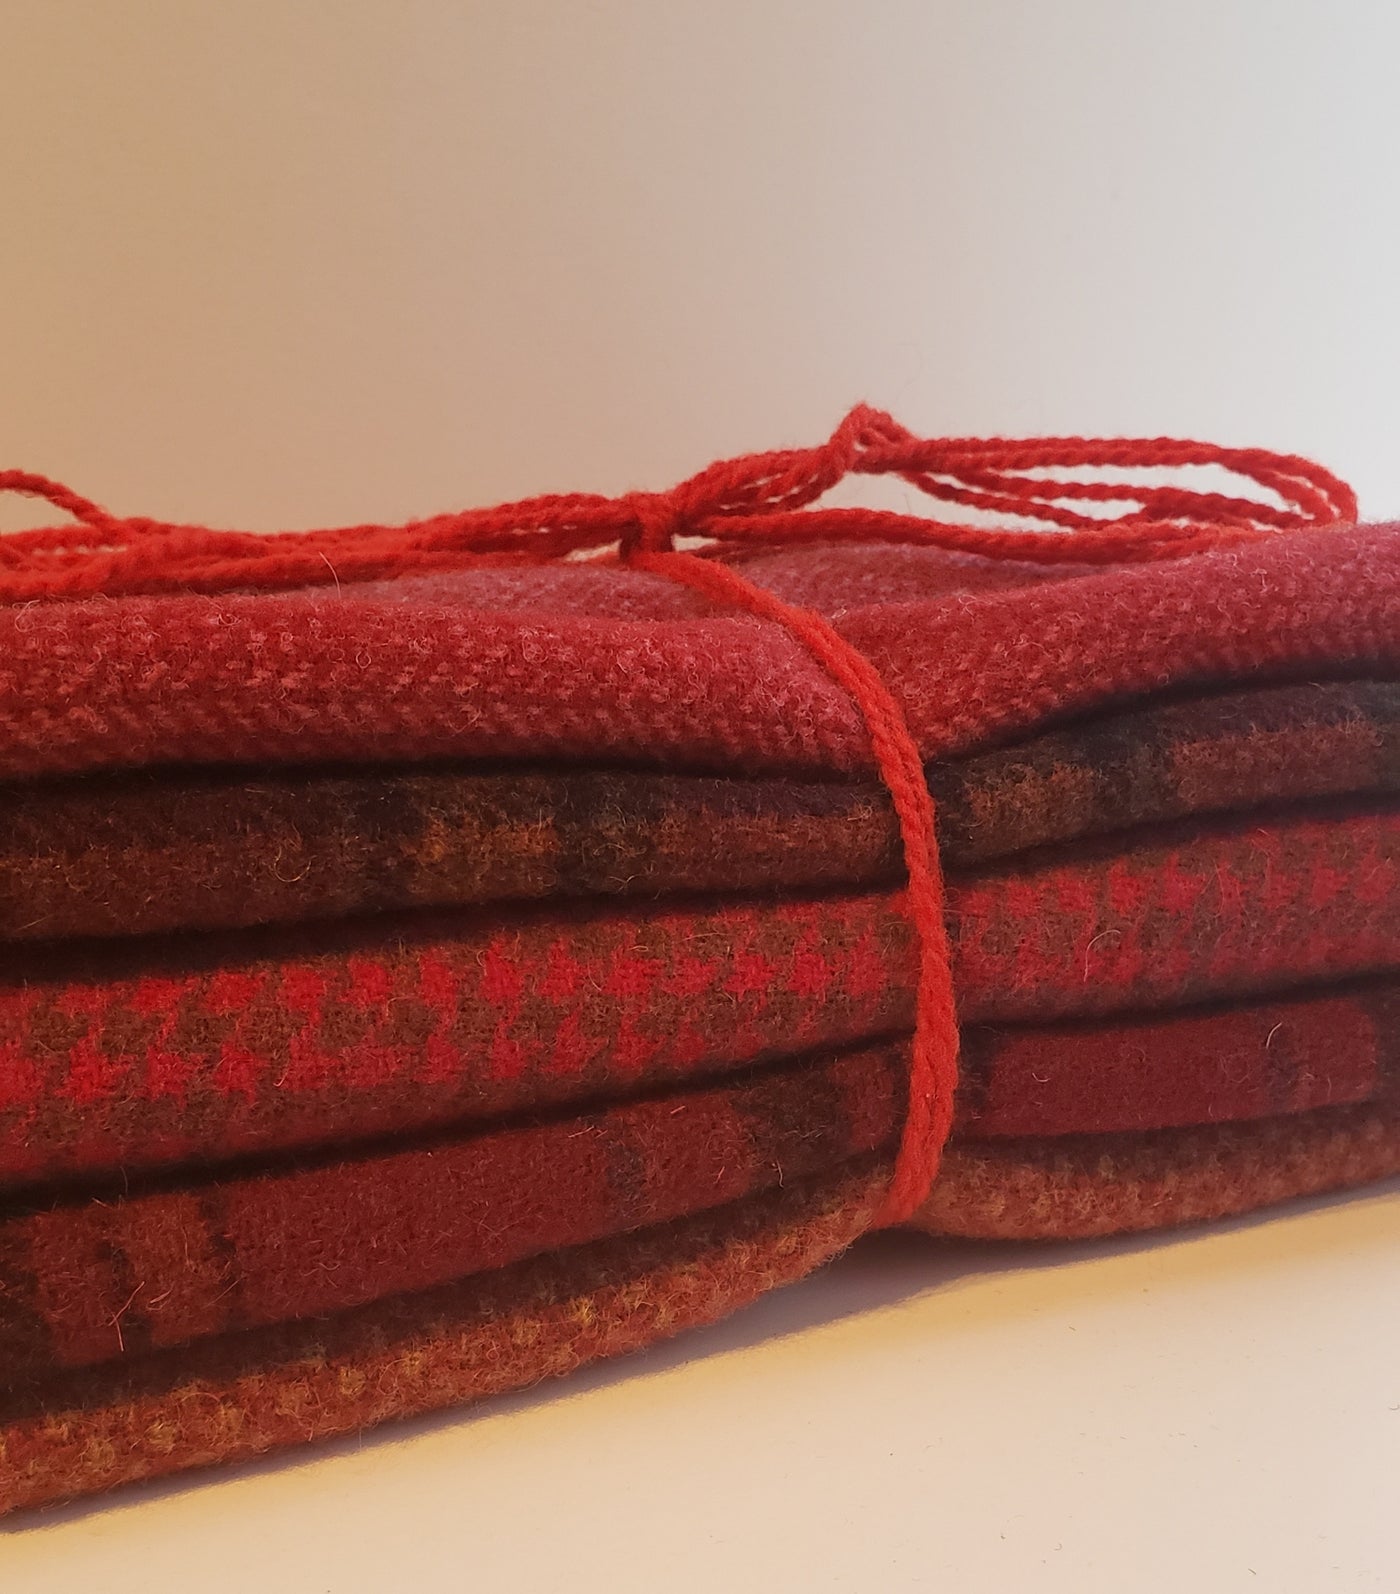 RED SHADES - Wool Bundle - 5/8 yard - 100% Wool for Rug Hooking & Wool –  Red Sand Fibre Art Studio